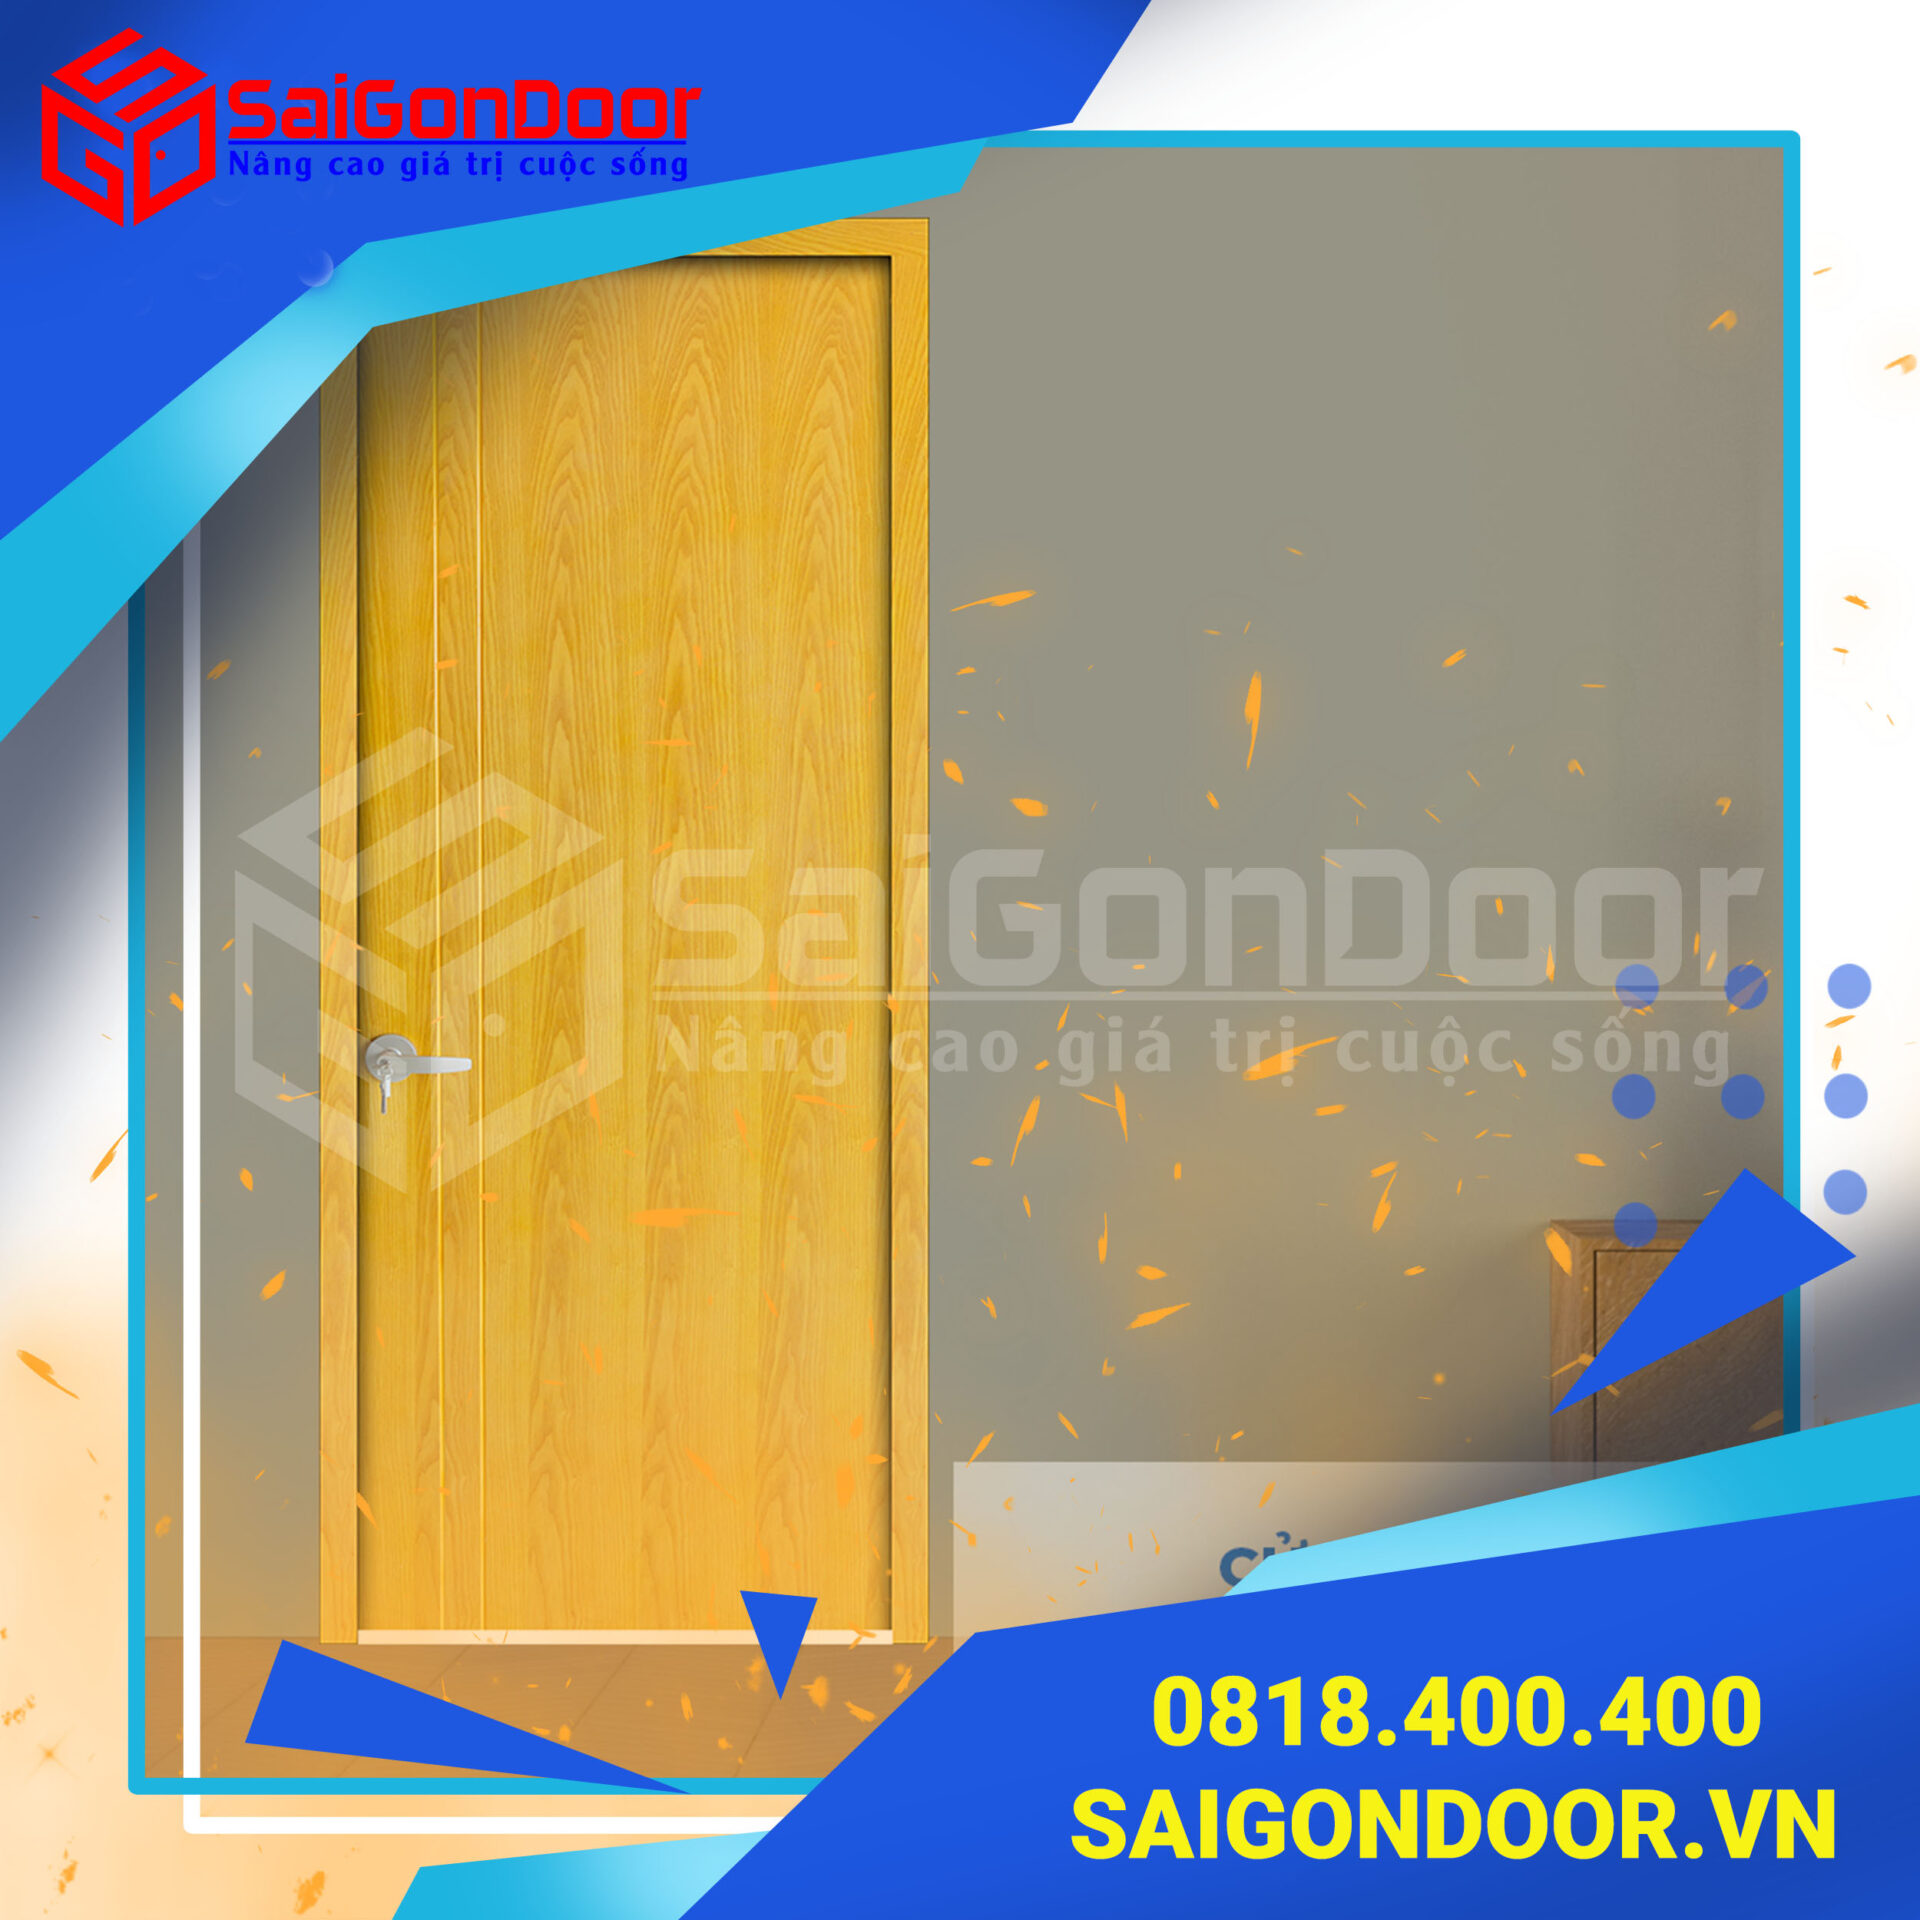 Cửa gỗ chống cháy SaiGonDoor thích hợp dùng làm cửa phòng ngủ, cửa nhà ở vừa đẹp lại an toàn